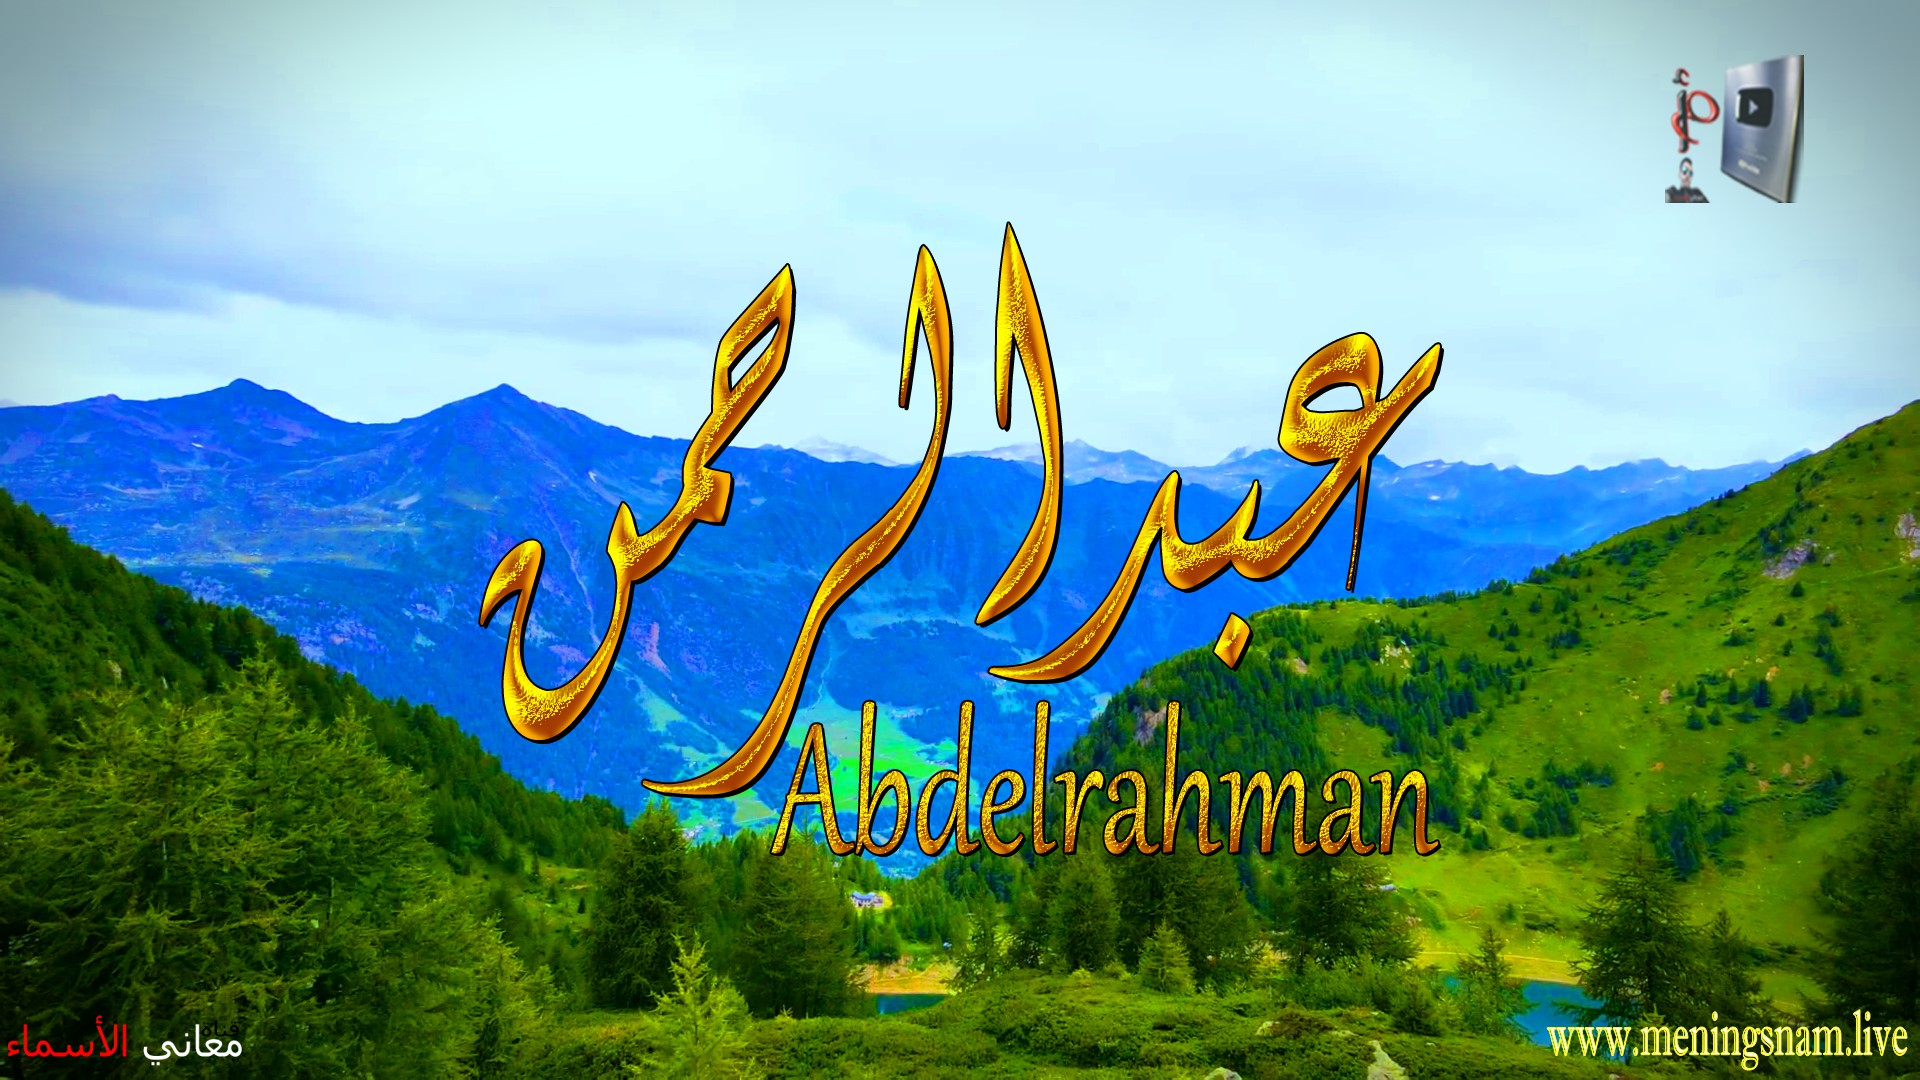 معنى اسم, عبد الرحمن, وصفات, حامل, هذا الاسم, Abdelrahman,